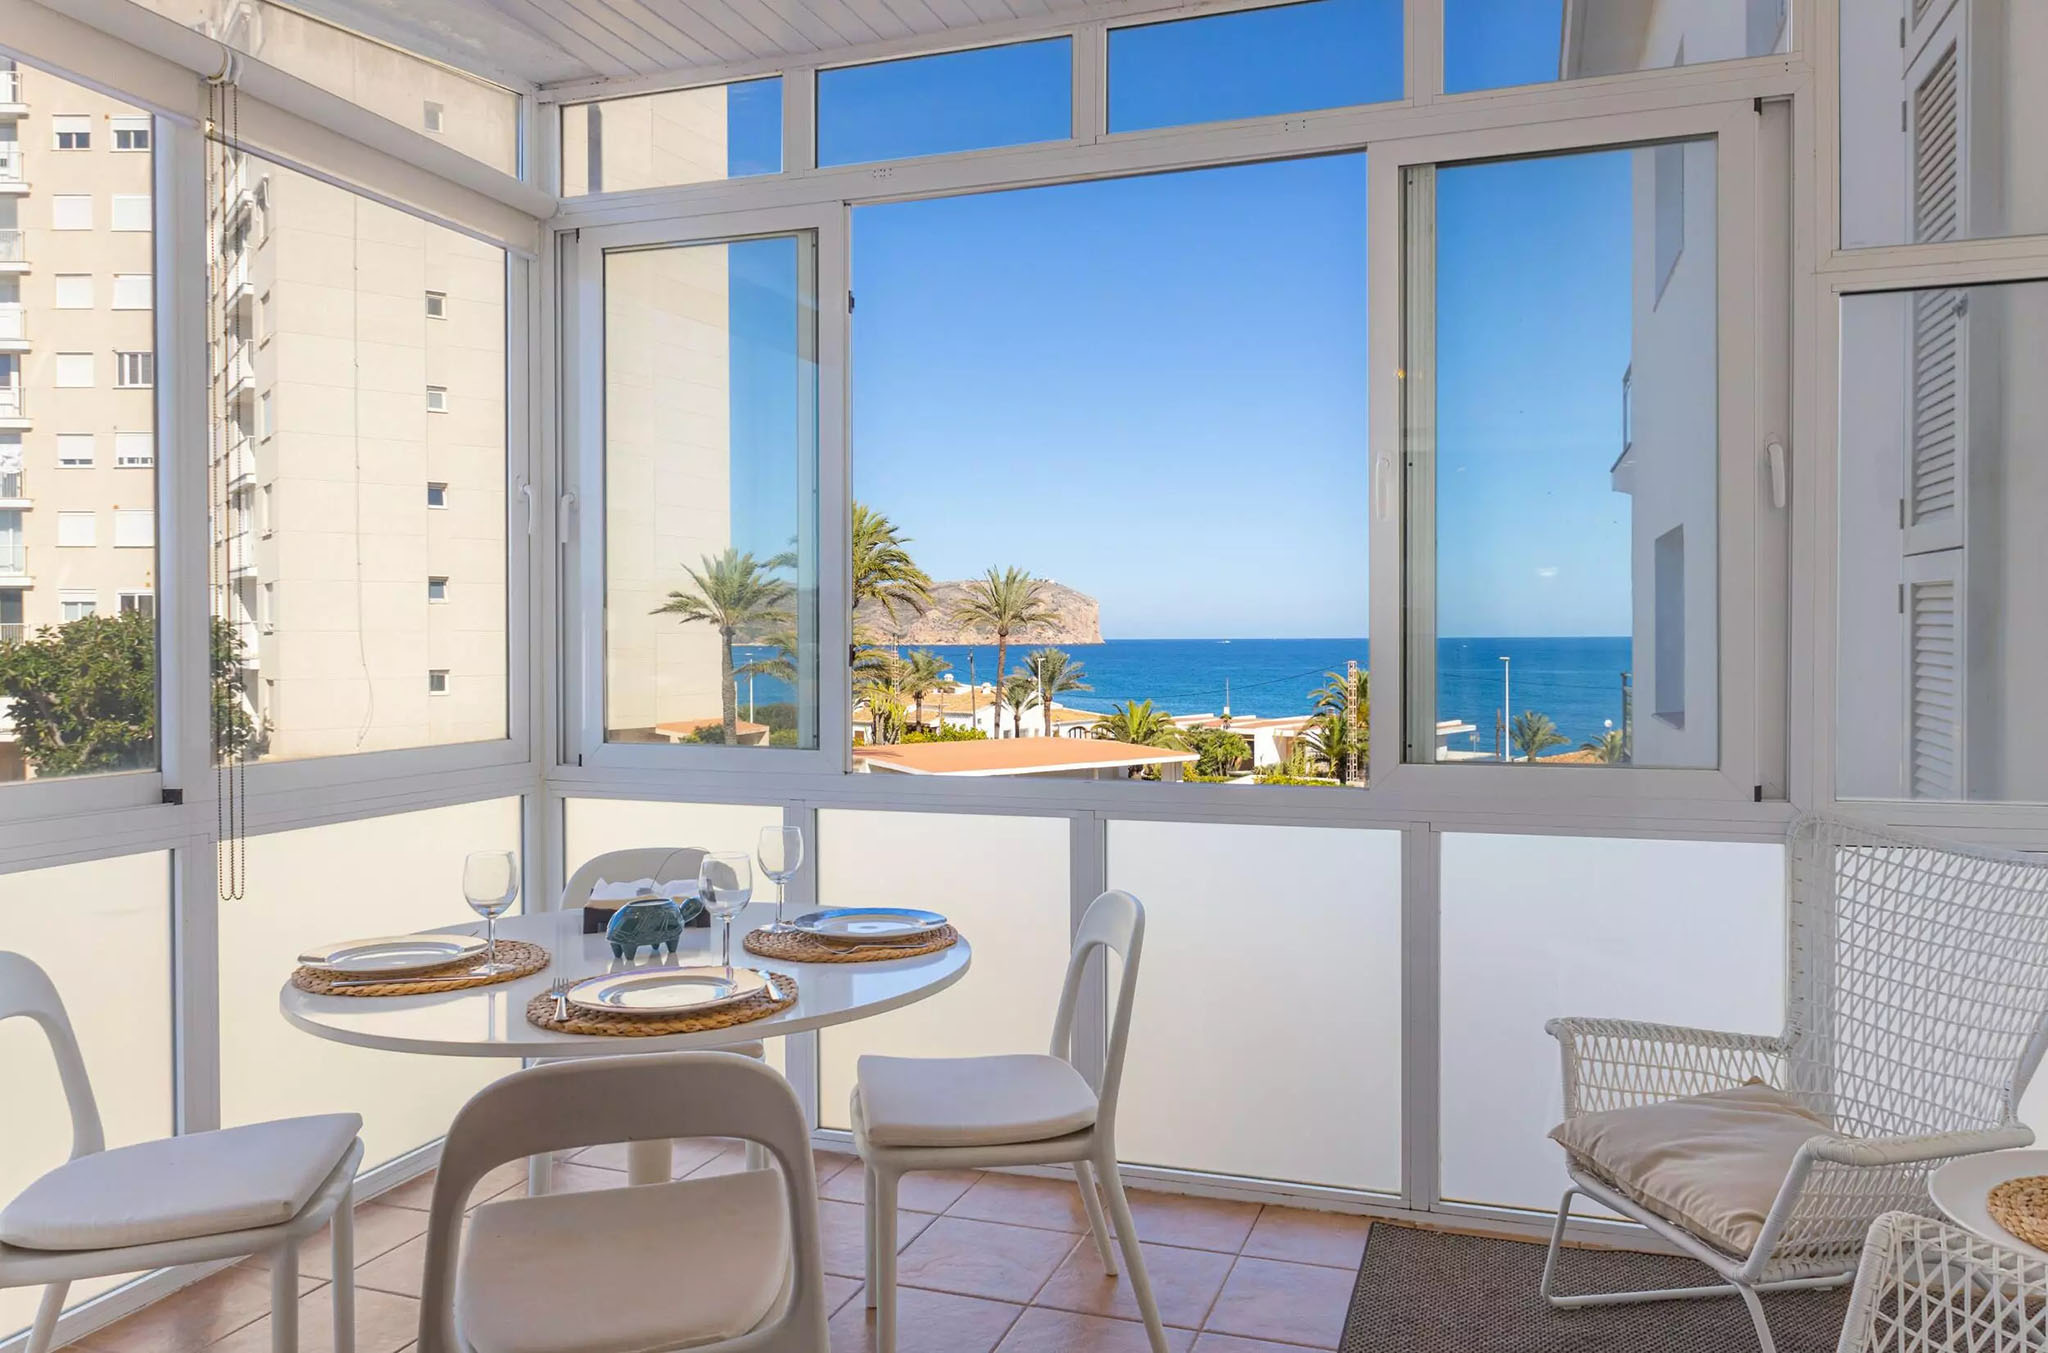 Comedor en la terraza del apartamento de concepto abierto frente al mar  de Xàbia de Vicens Ash